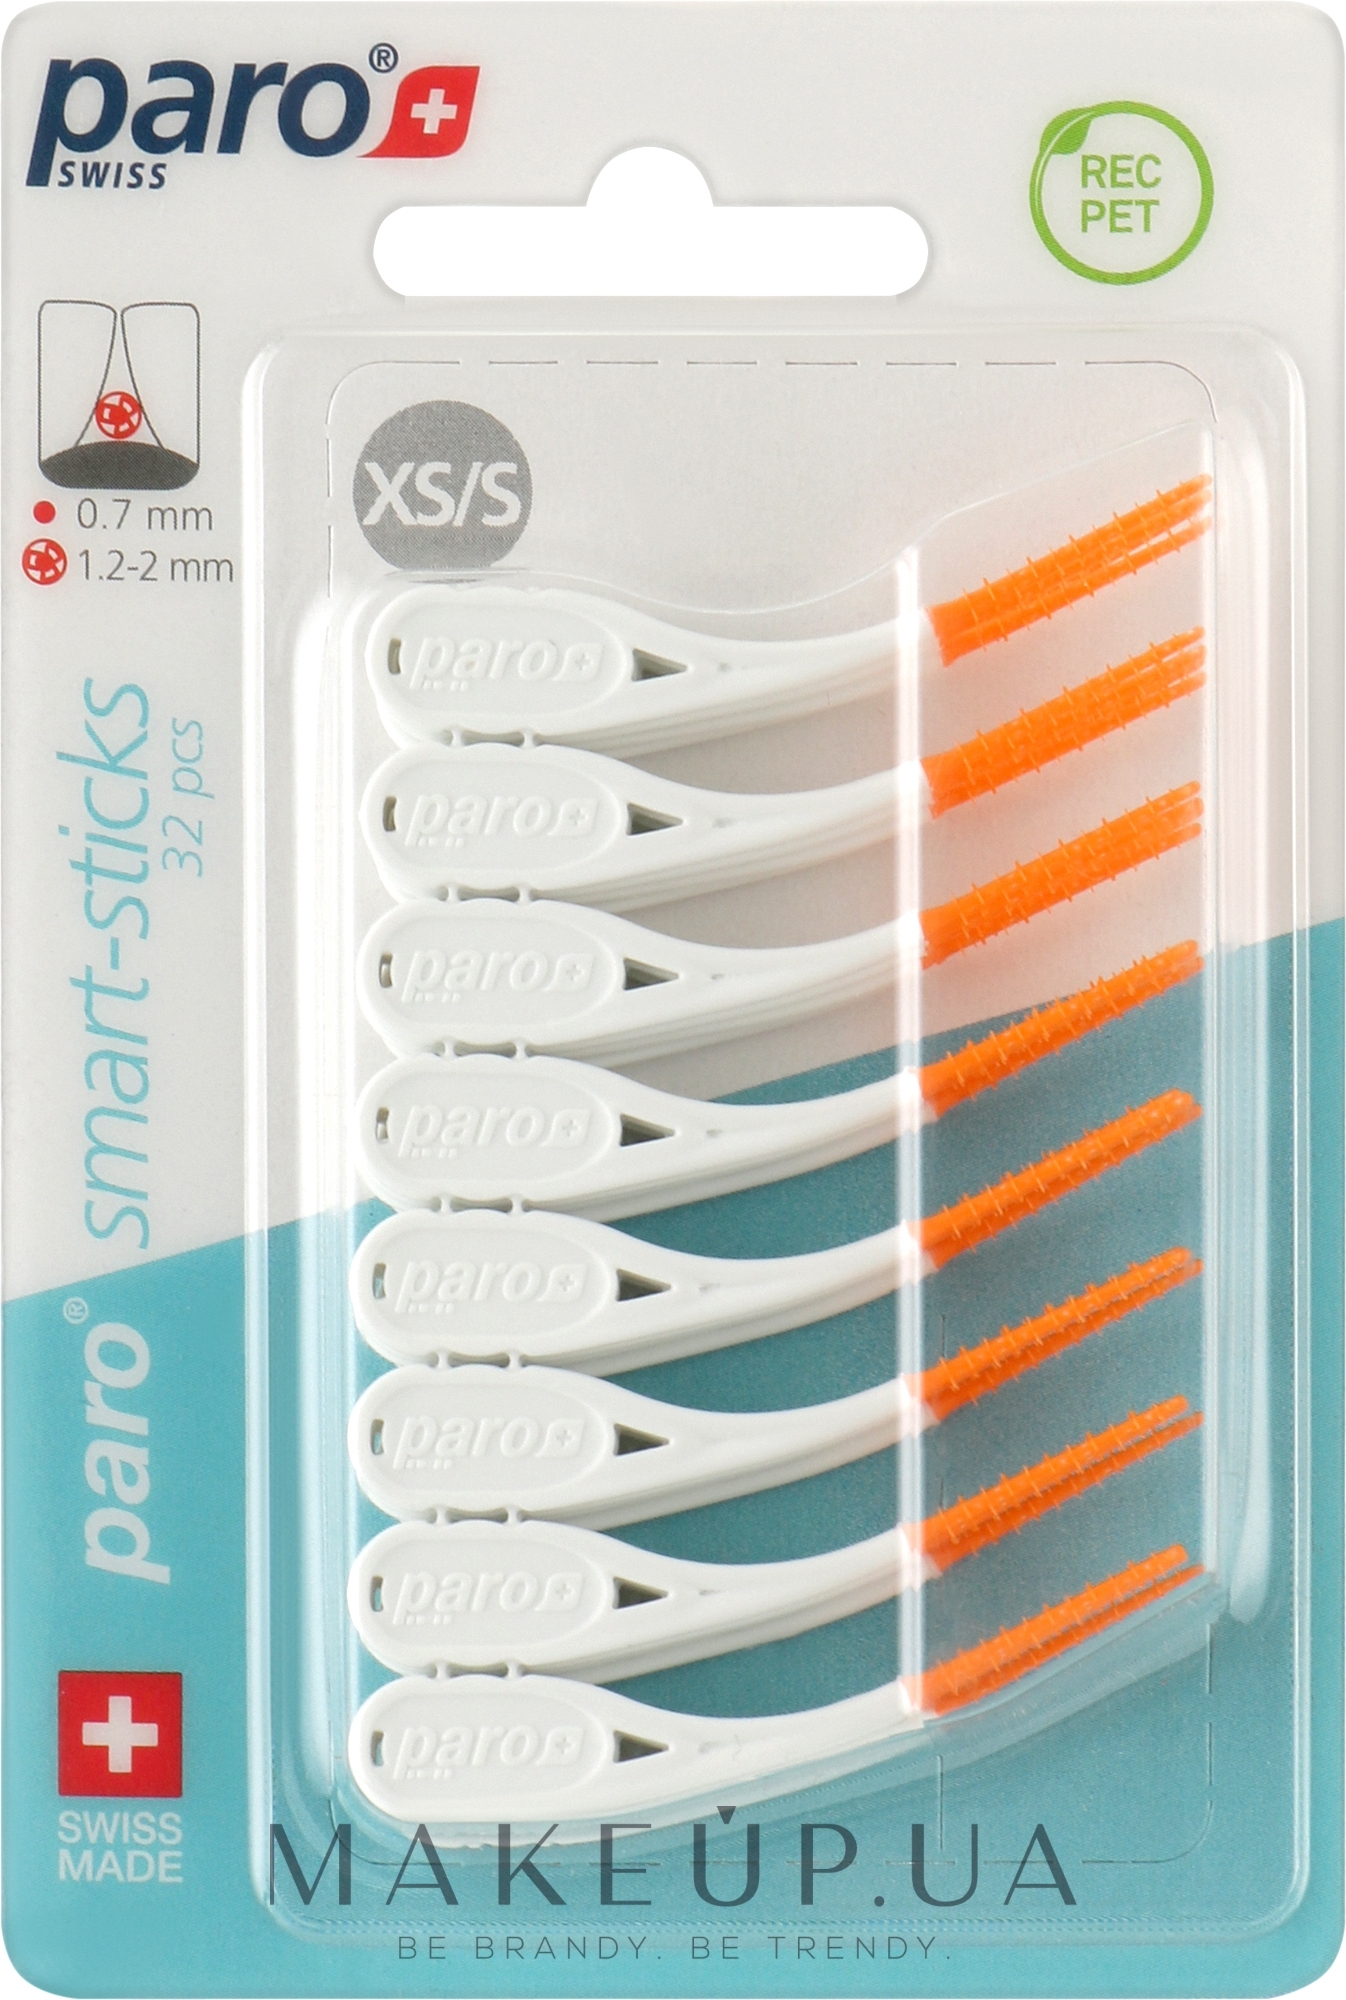 Безметалловые межзубные щетки, размер XS/S, 1.2/2 мм, оранжевые - Paro Swiss Smart-Sticks — фото 32шт